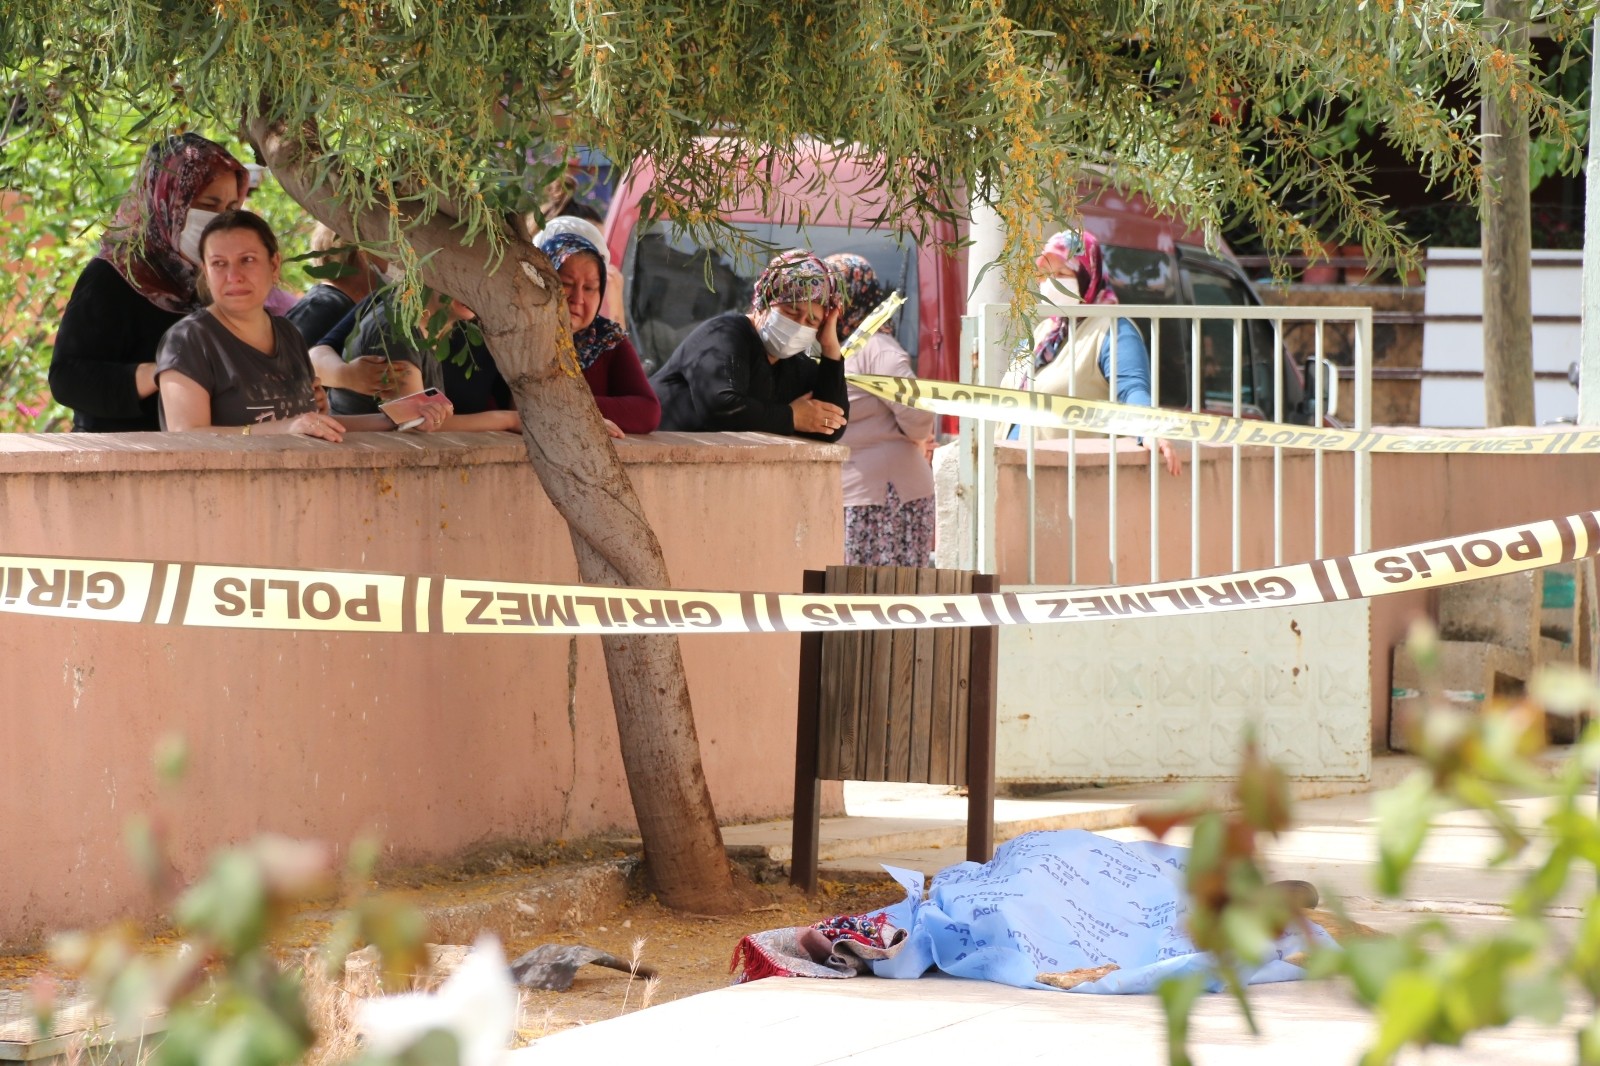 Camide gönüllü temizlik yapan adam, caminin bahçe kısmında ölü bulundu